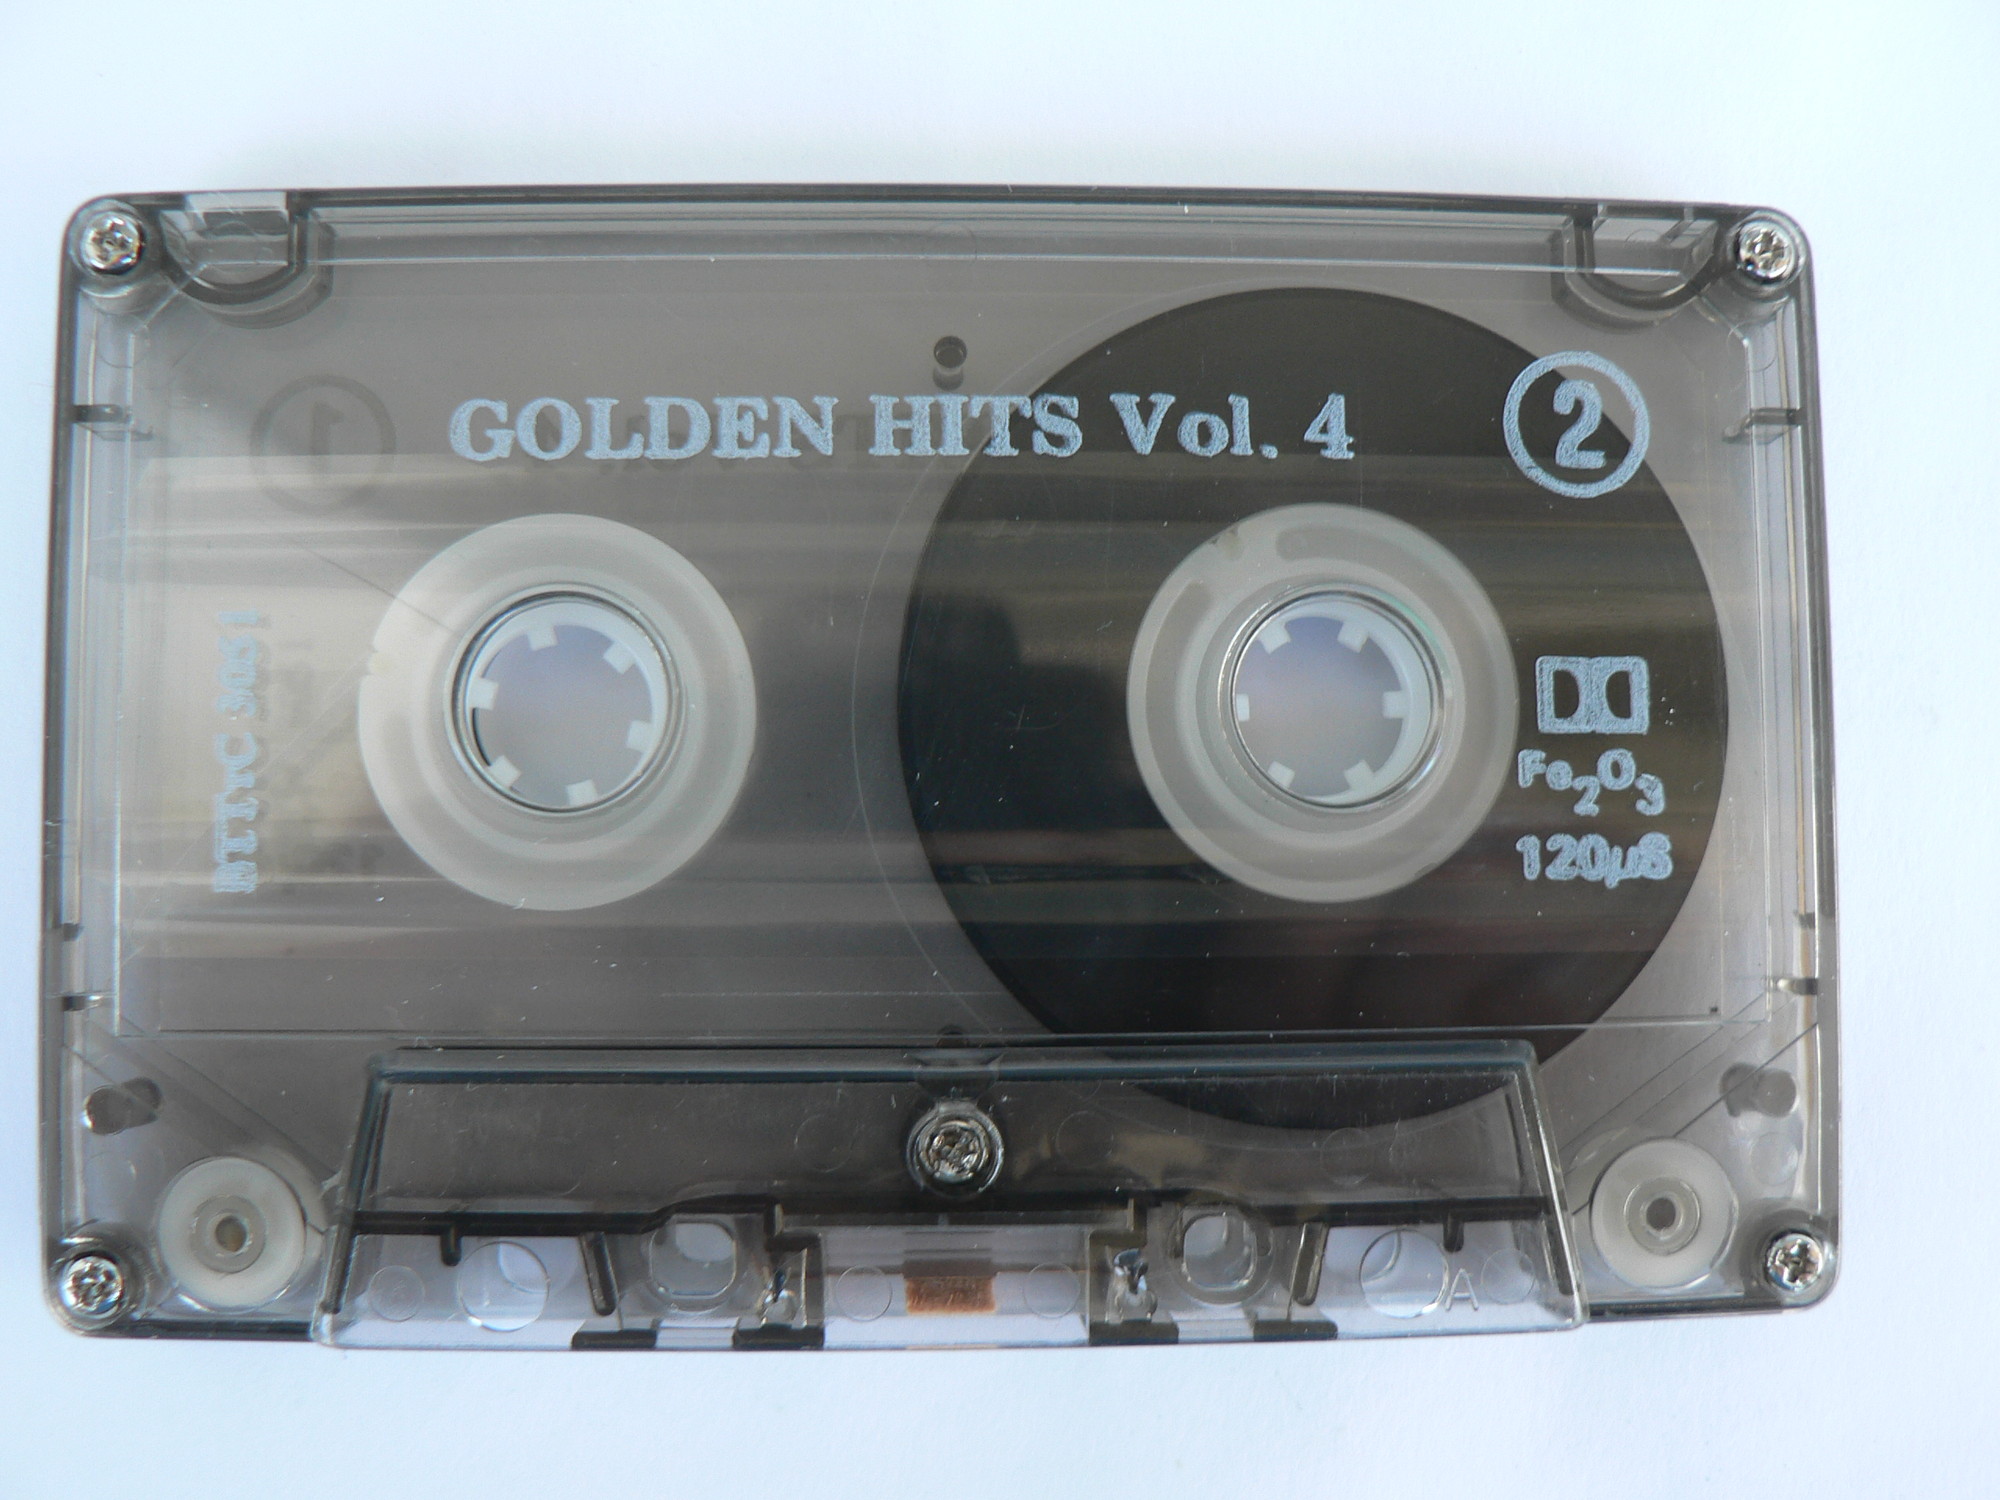 Golden hits. Vol. 4